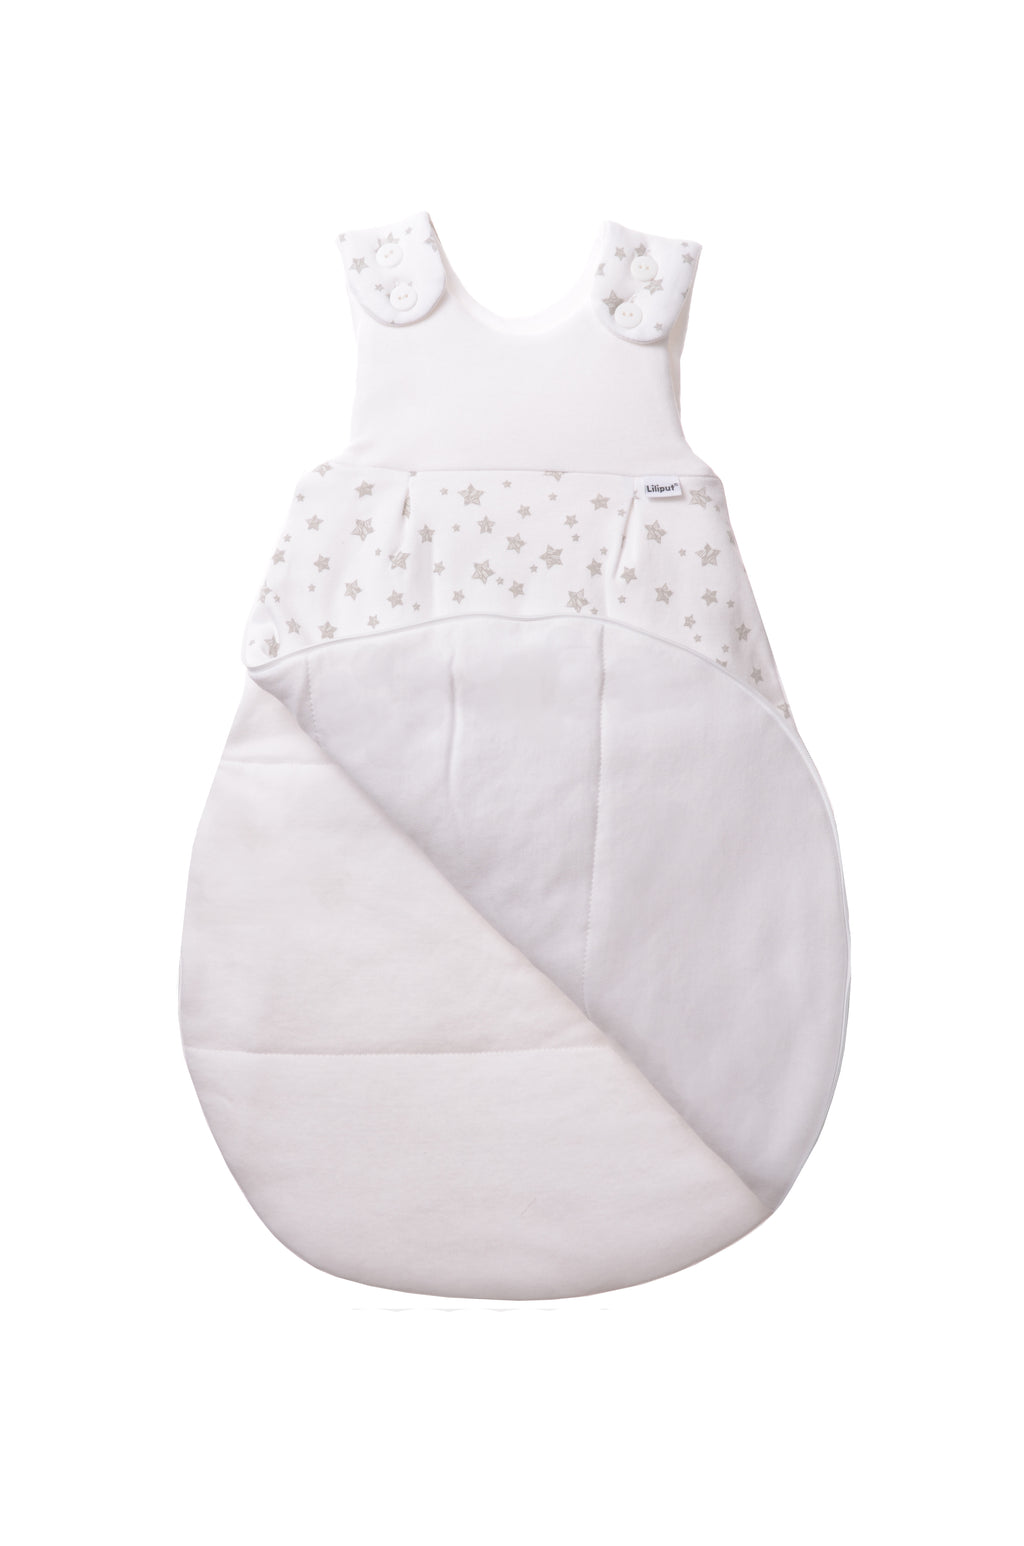 Schlafsack für Babys in unterschiedlichen Längen mit Knöpfen und Reißverschluss an der Seite. Design: graue Sterne.